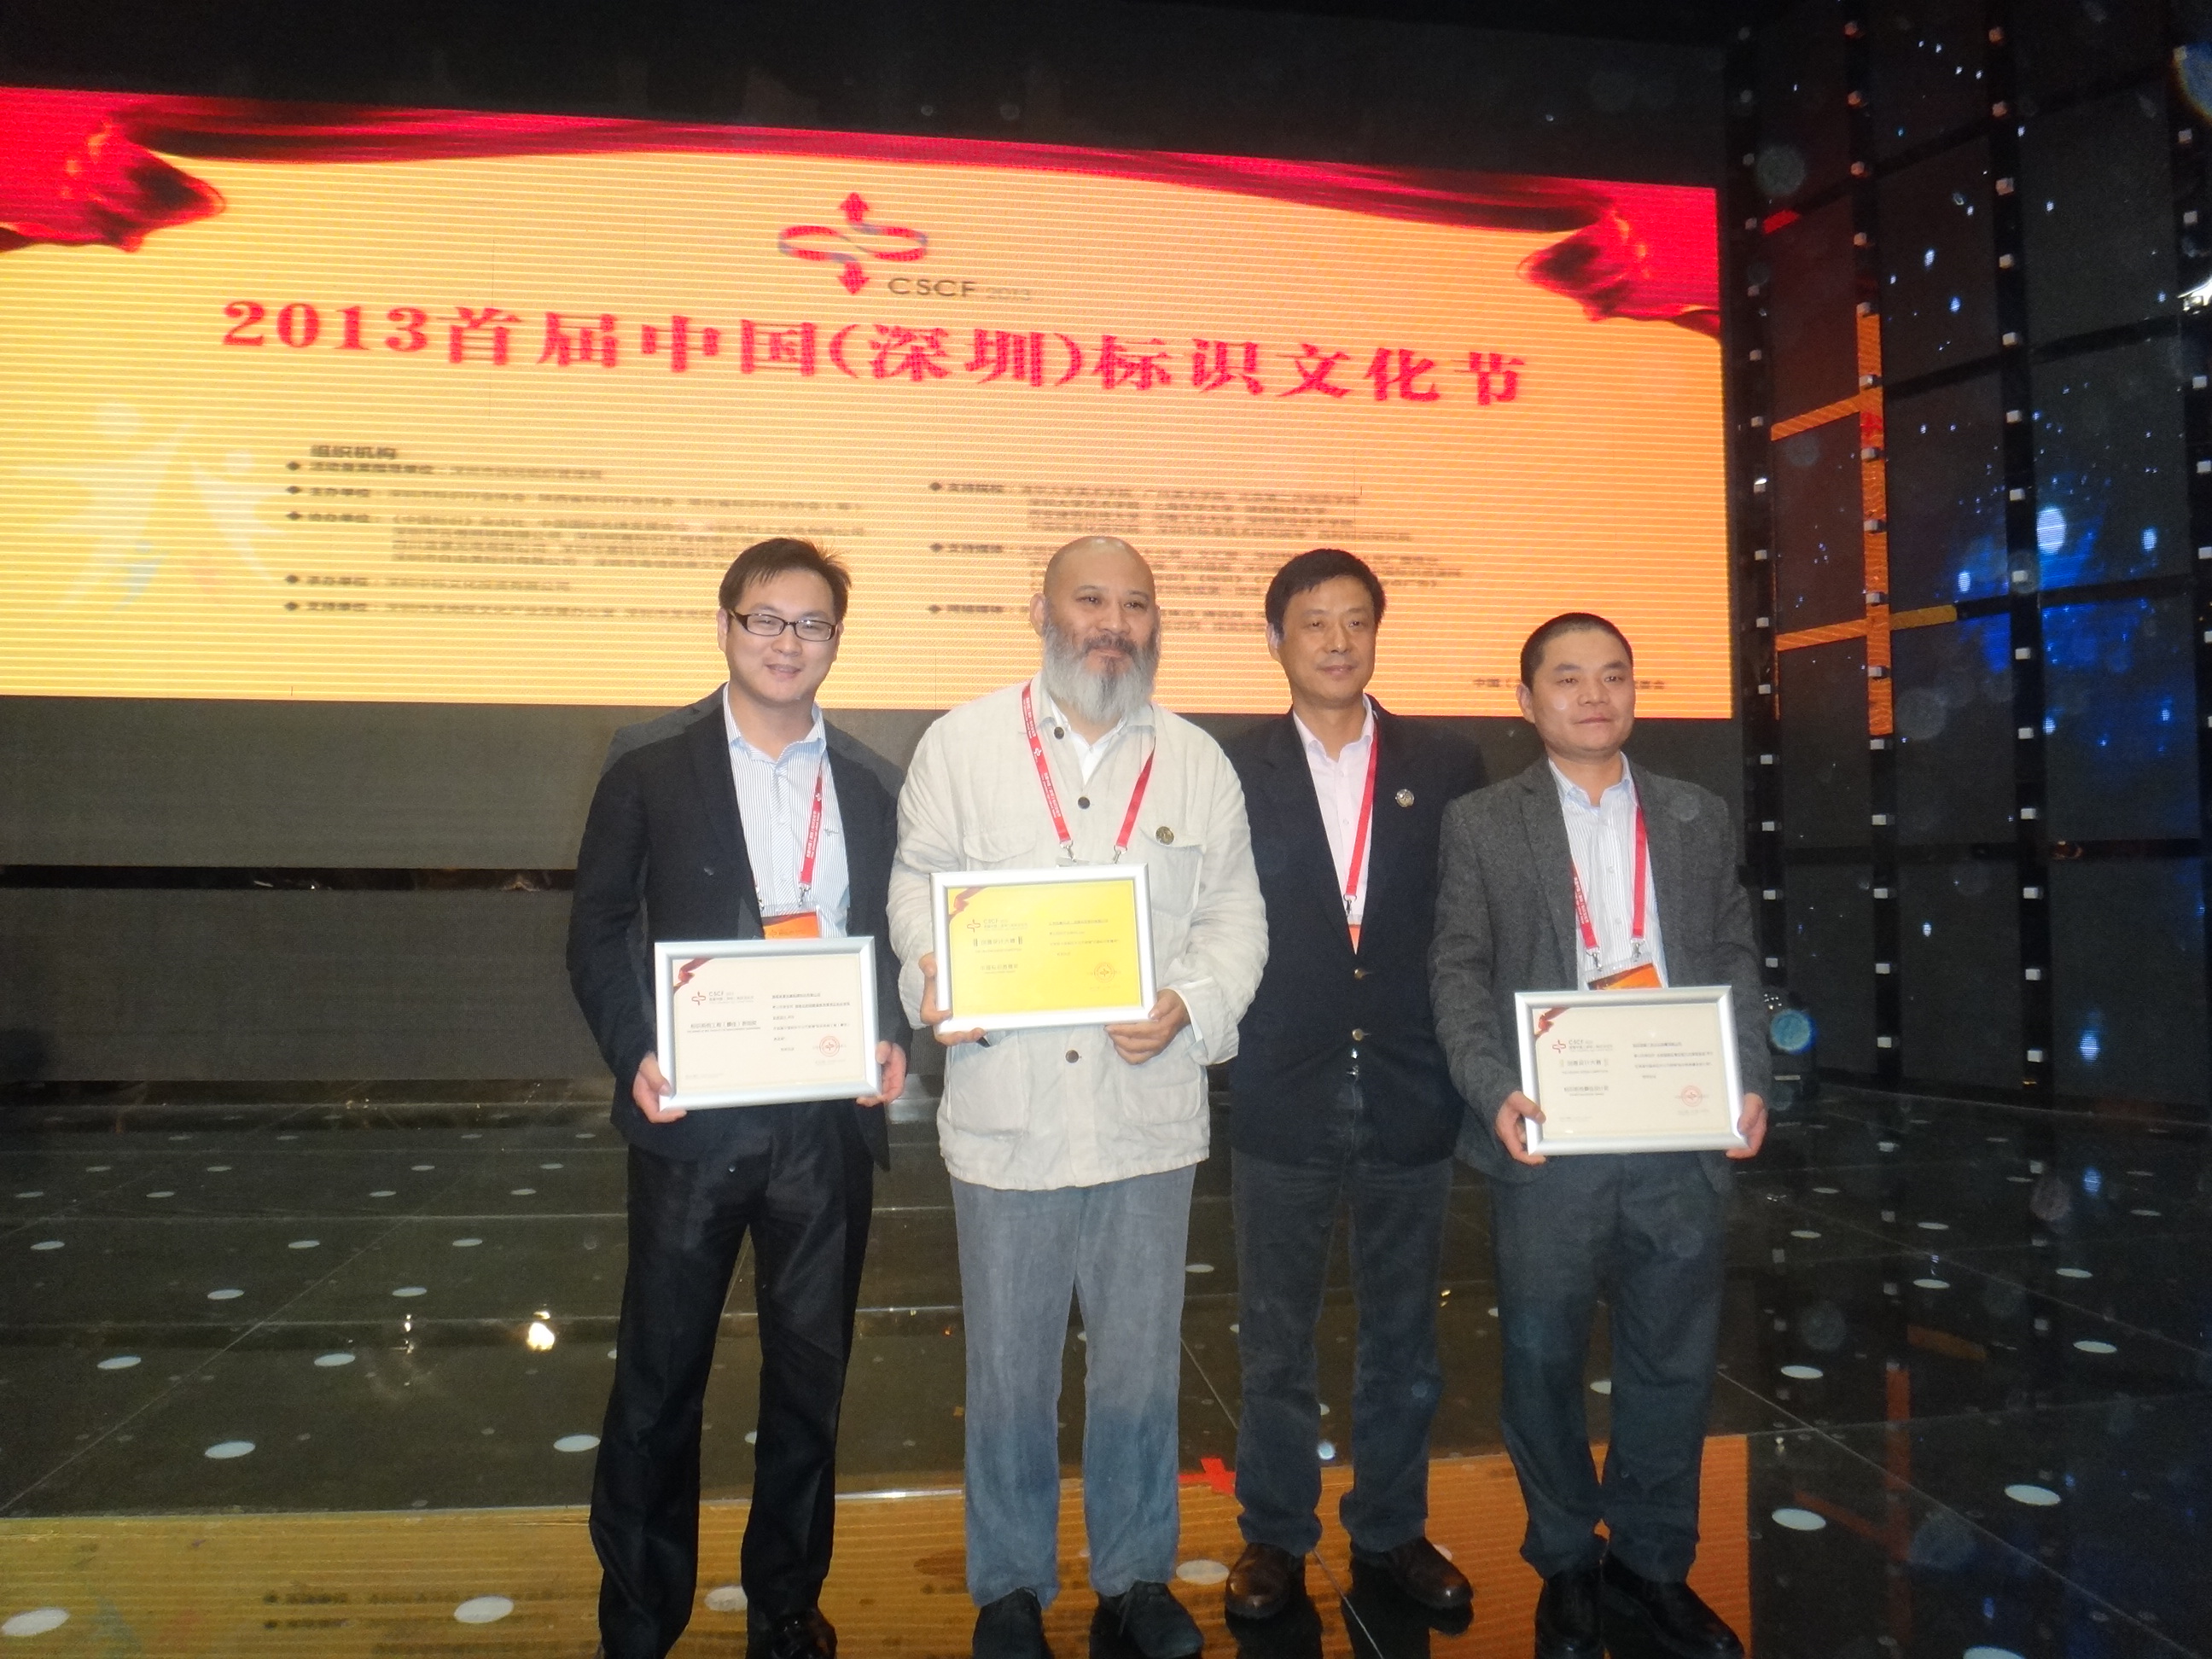 湖南美景创意2013中国标识设计创意大赛获奖作品展示